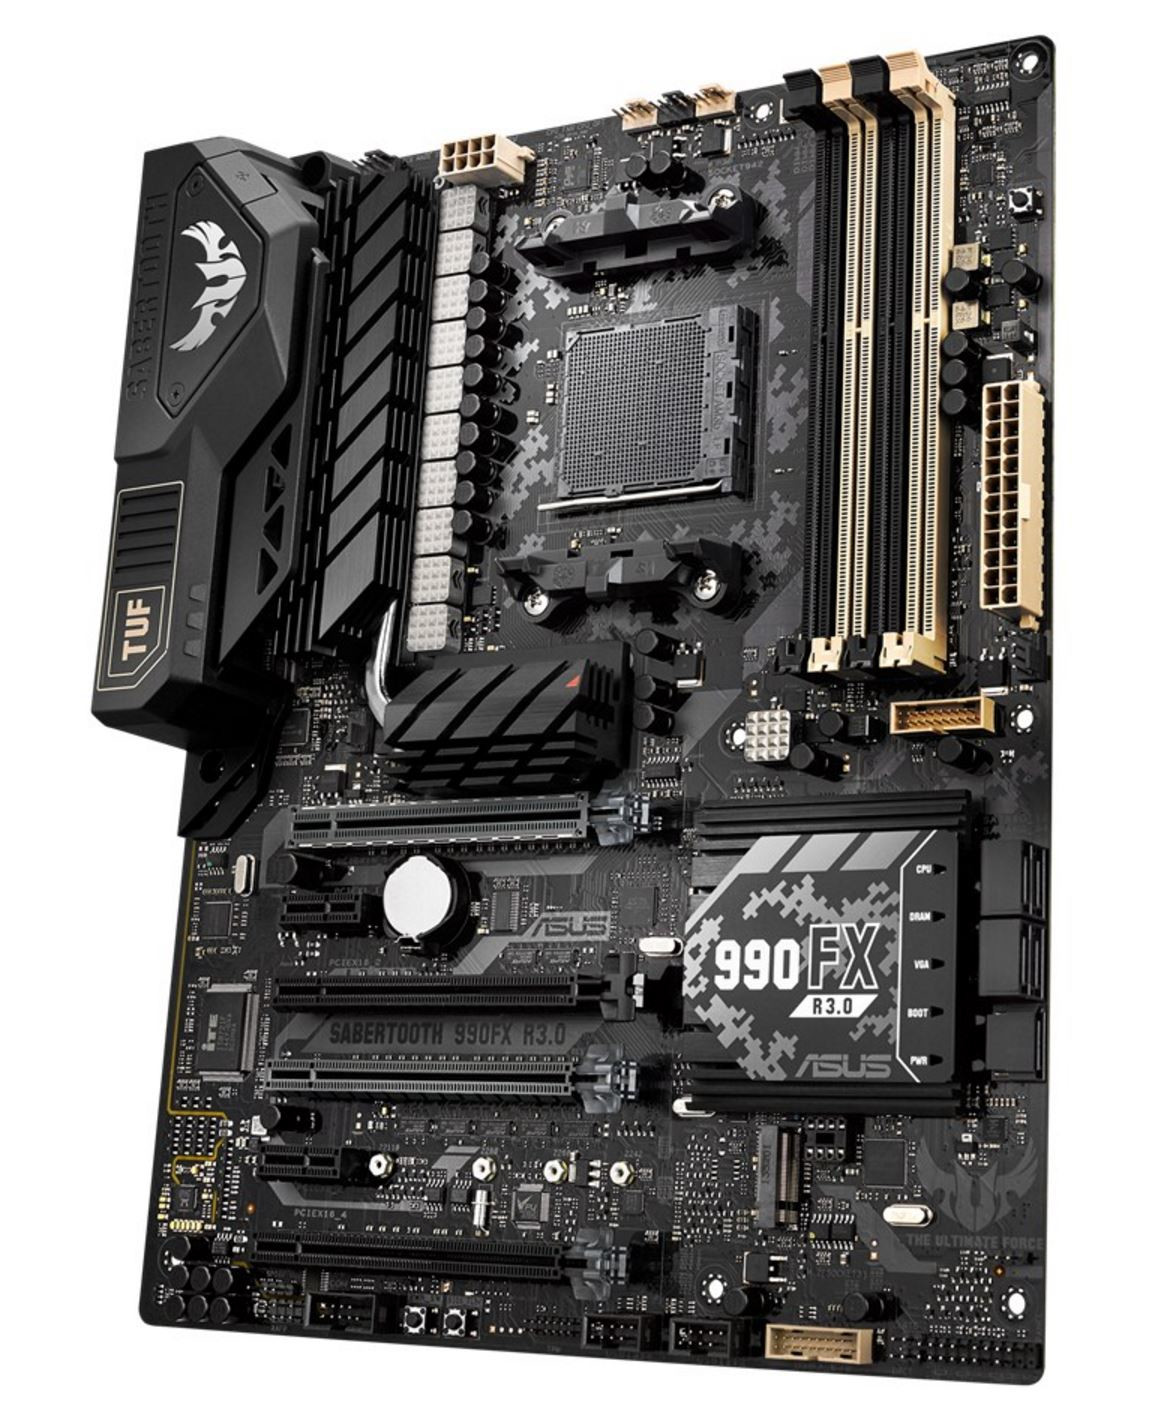 Immagine pubblicata in relazione al seguente contenuto: ASUS introduce la motherboard TUF Sabertooth 990FX R3.0 per CPU AMD AM3+ | Nome immagine: news25188_ASUS-TUF-Sabertooth-990FX-R3_1.jpg